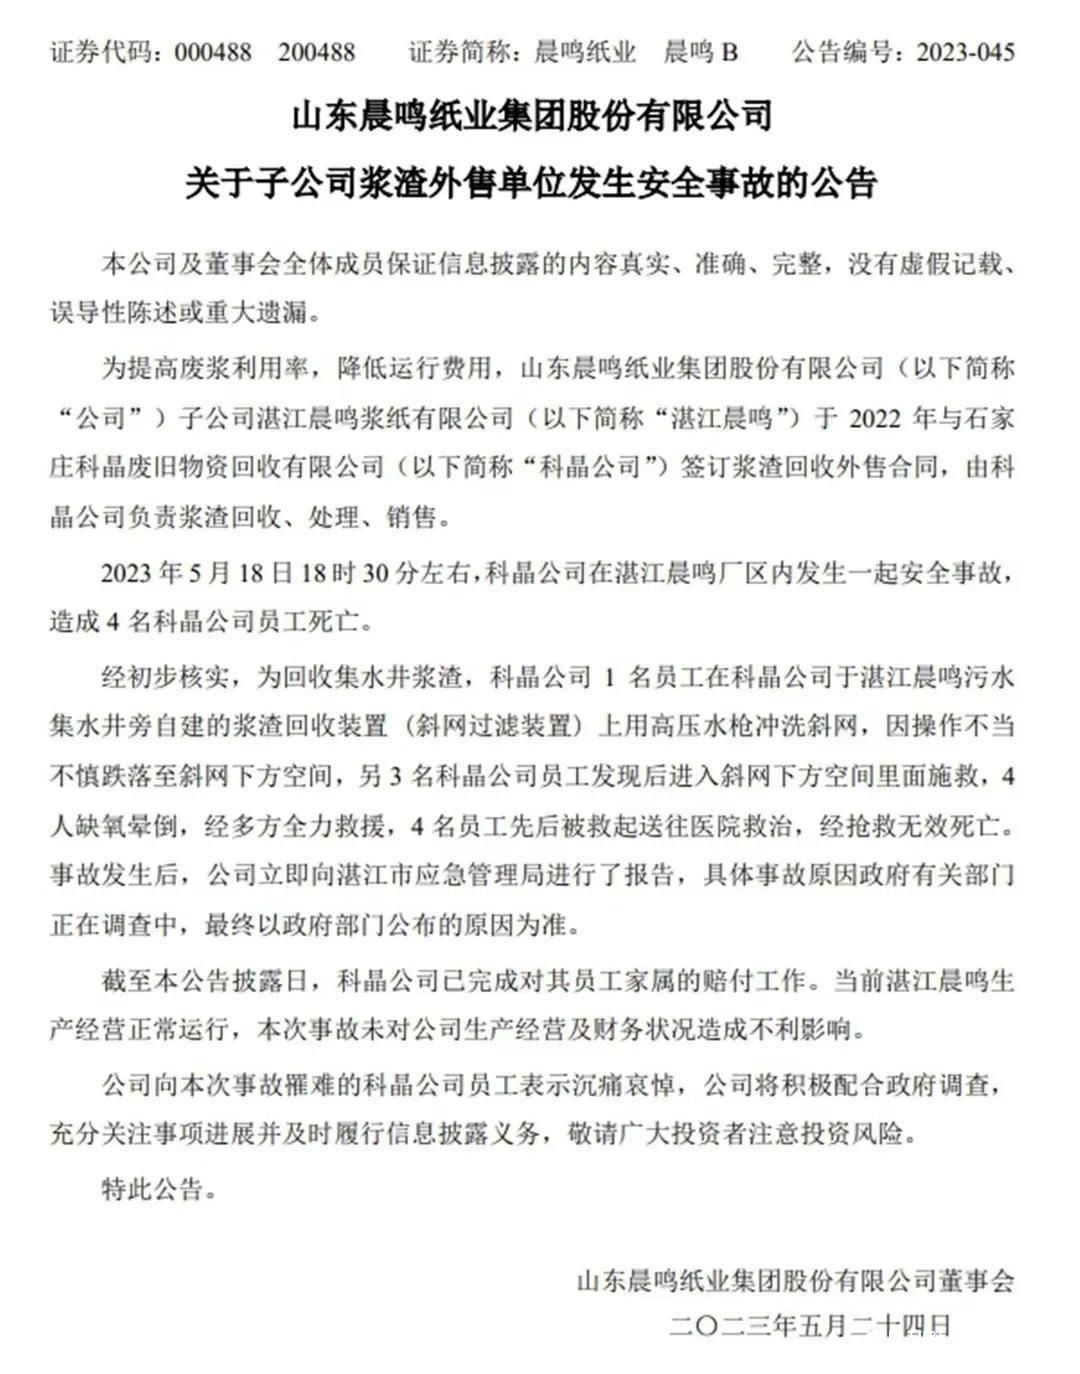 晨鸣纸业子公司湛江晨鸣厂区发生安全事故，造成4人缺氧死亡